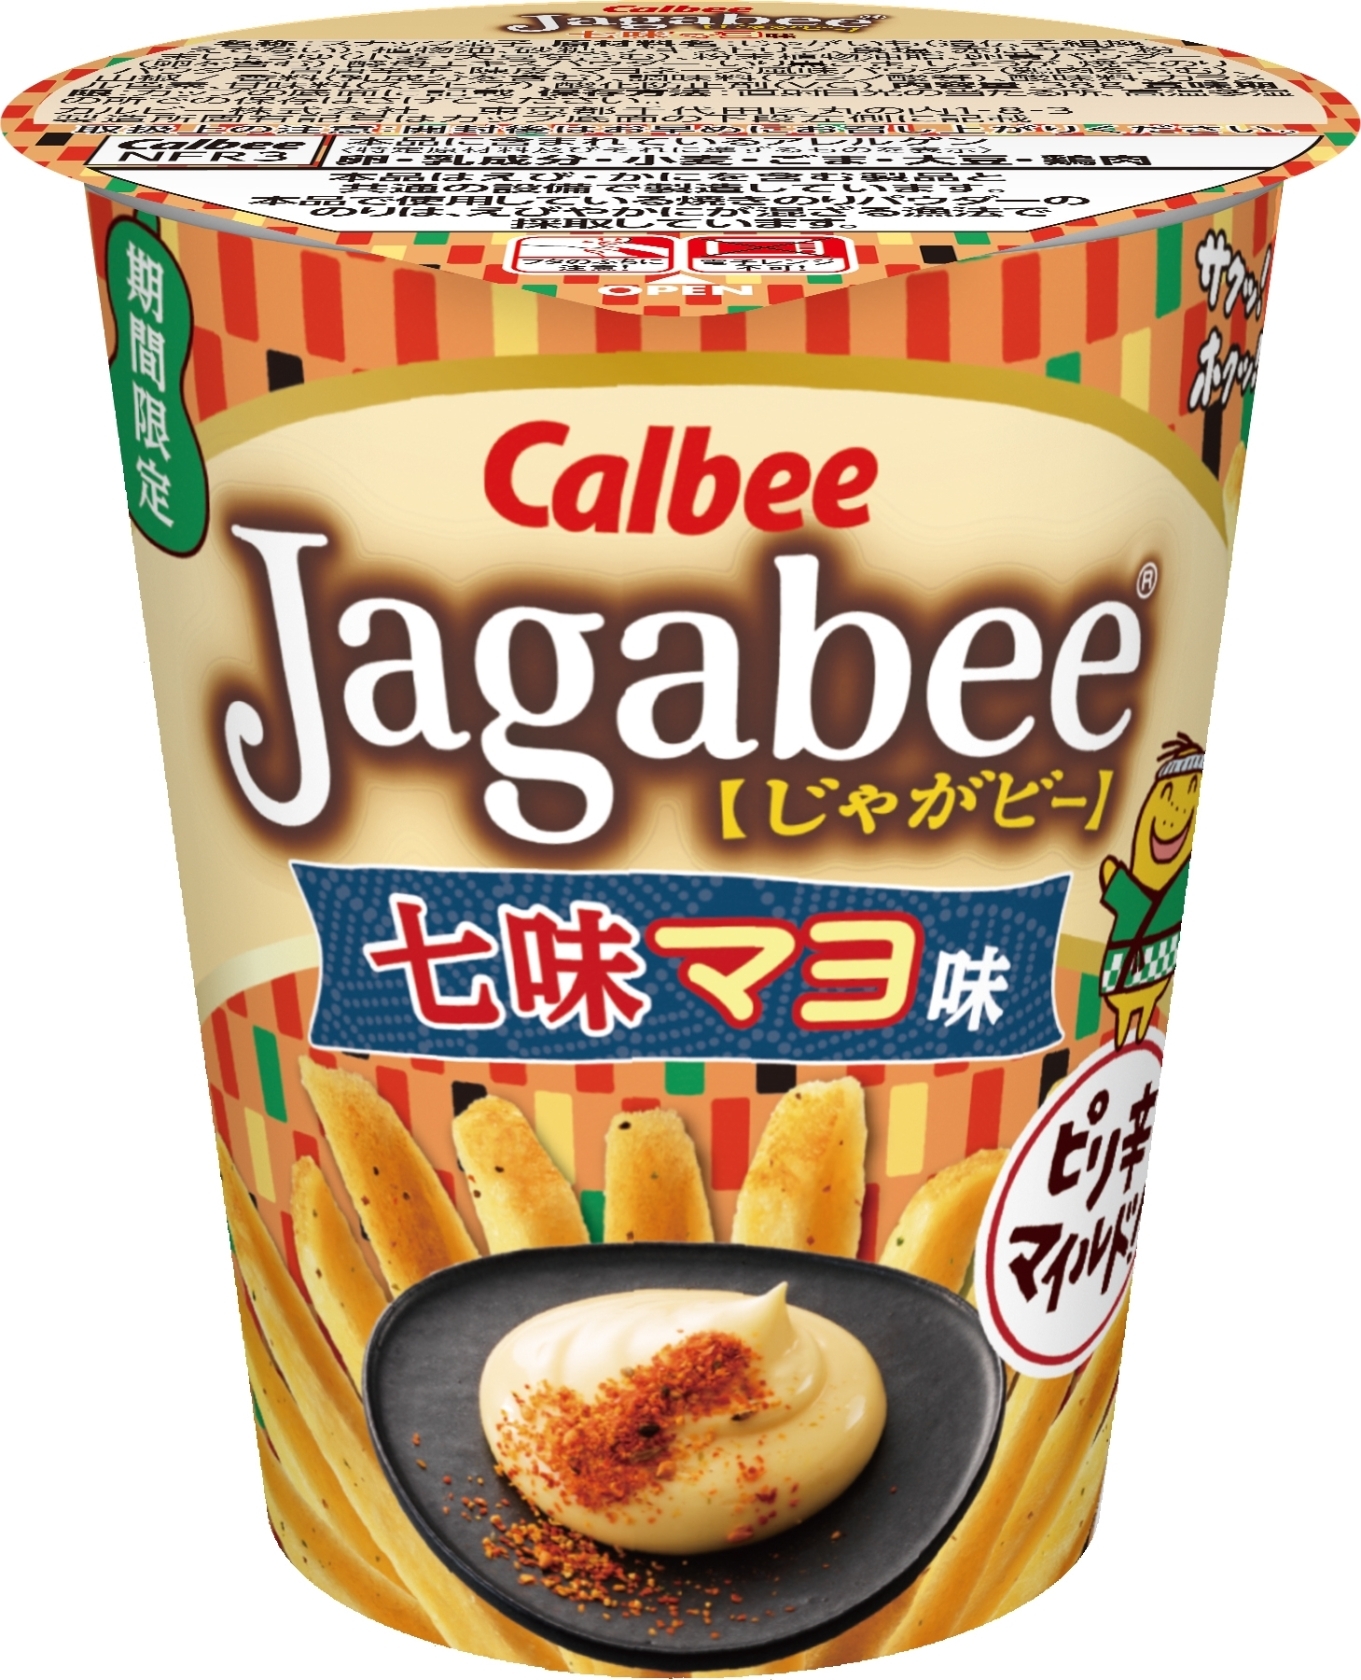 中評価 カルビー Jagabee 七味マヨ味 カップ38g 製造終了 のクチコミ 評価 値段 価格情報 もぐナビ